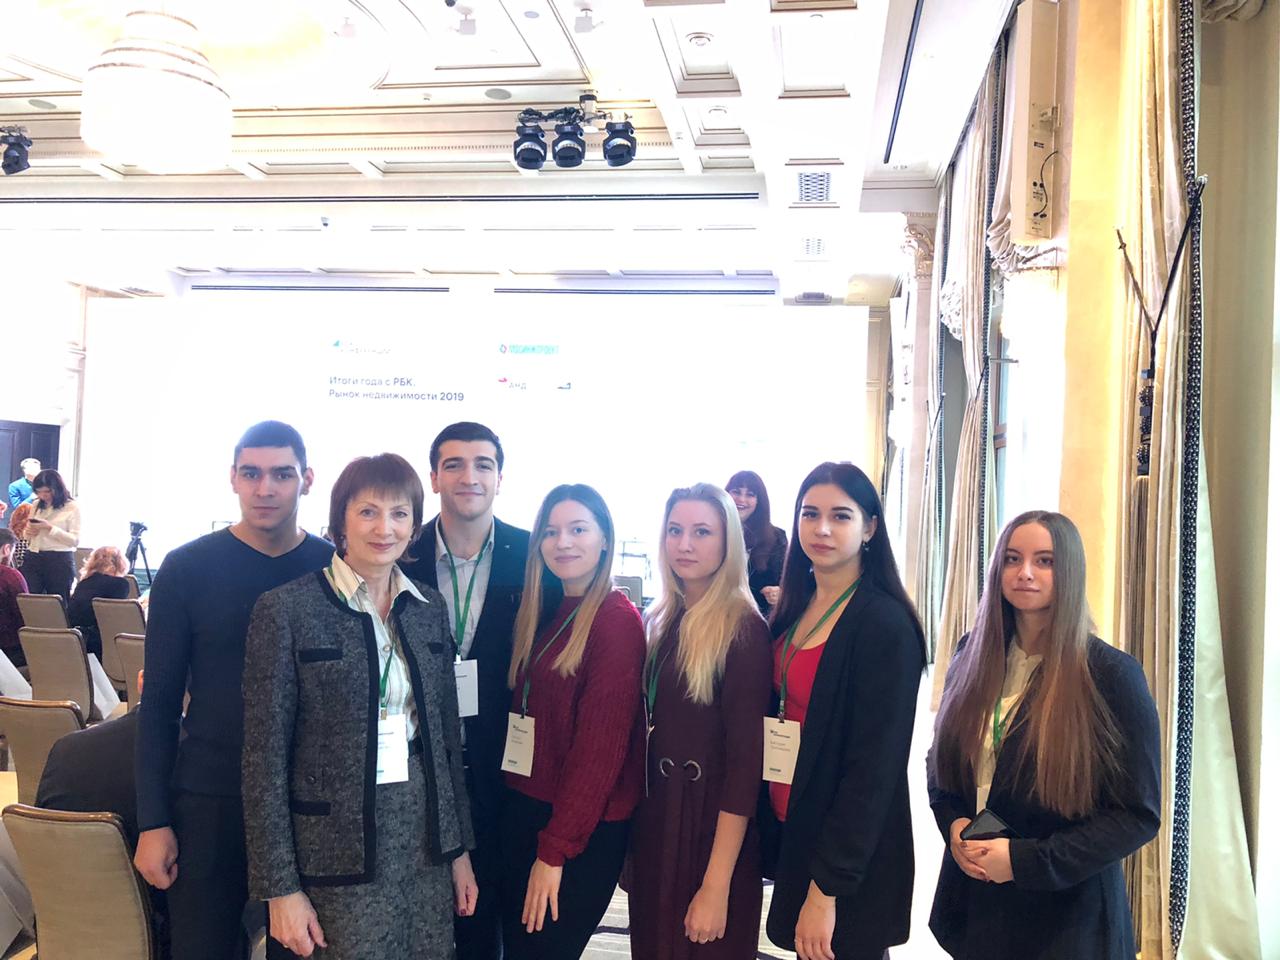 6 декабря студенты профиля "Экономика города" приняли участие в конференции "Итоги года с РБК. Рынок недвижимости 2019".